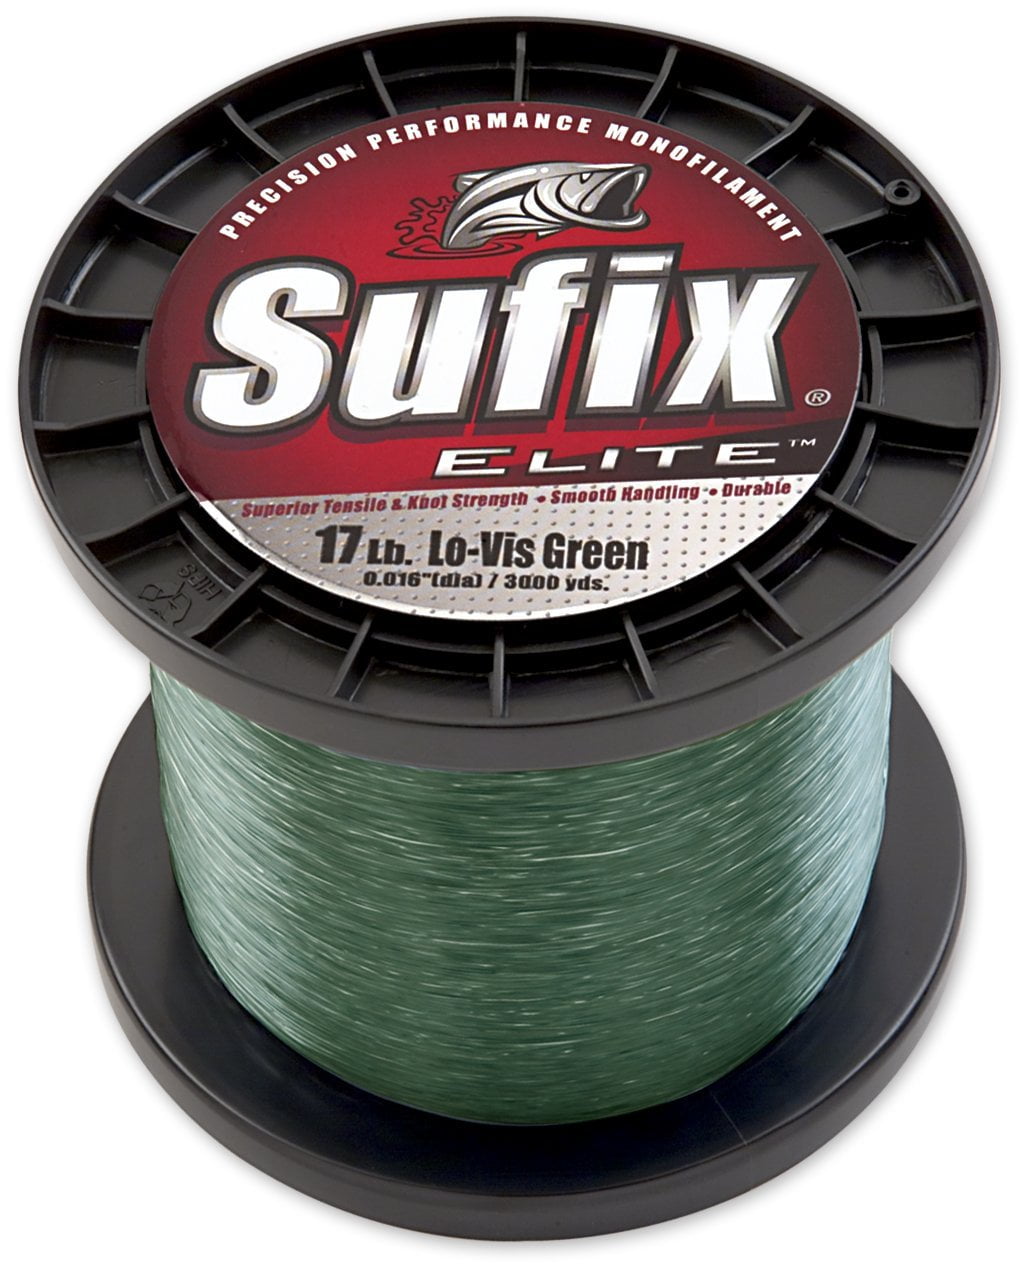 Sufix Elite Monofilament Fishing Line 3000 yds 14 lb. Low-Vis Green